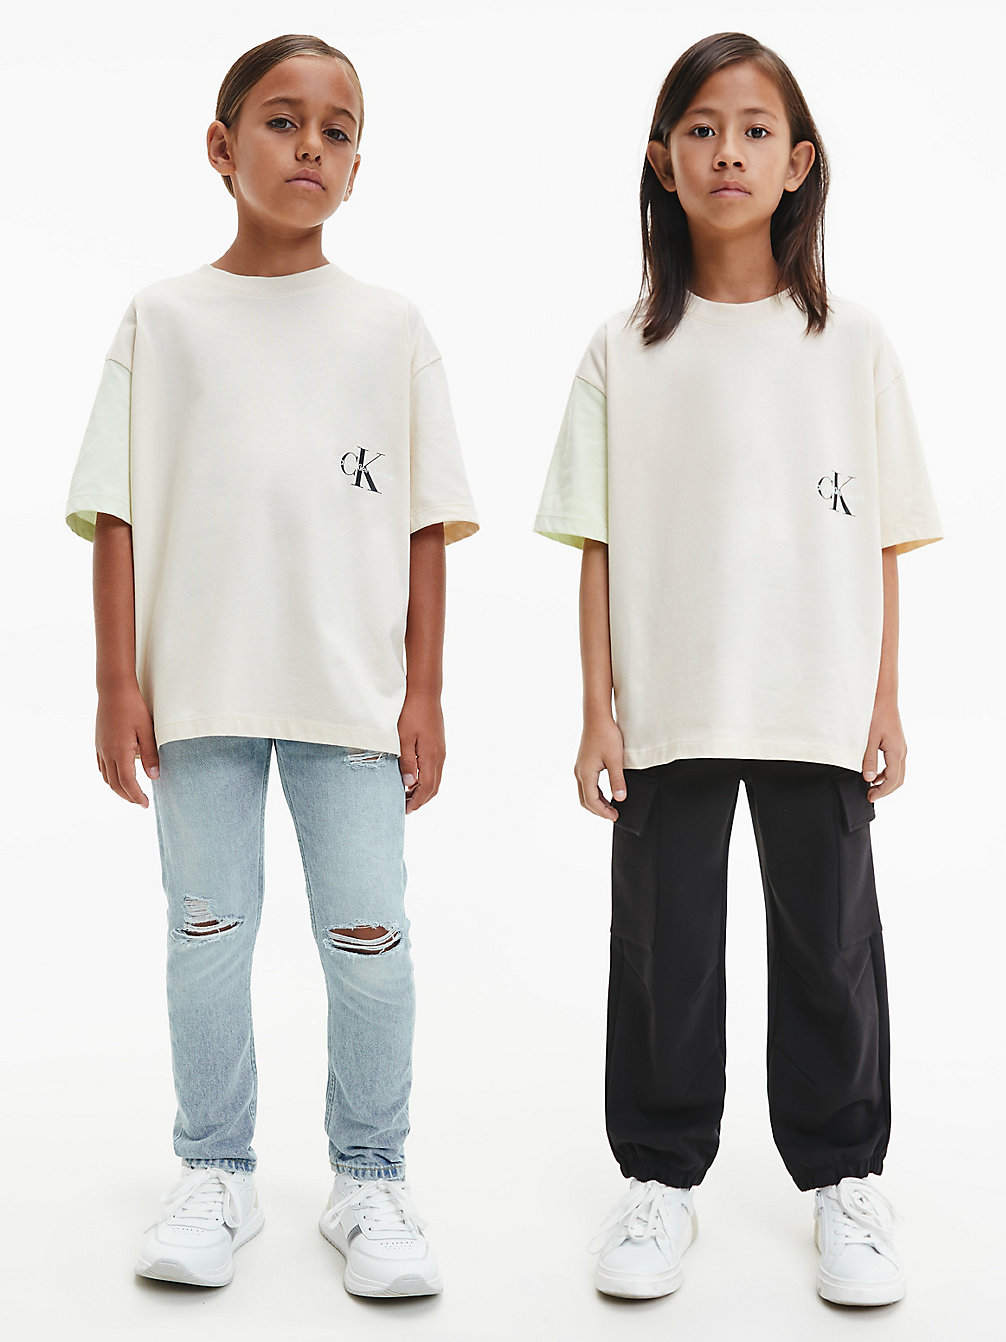 MUSLIN > Unisex Oversized T-Shirt Im Blockfarben-Design > undefined kids unisex - Calvin Klein